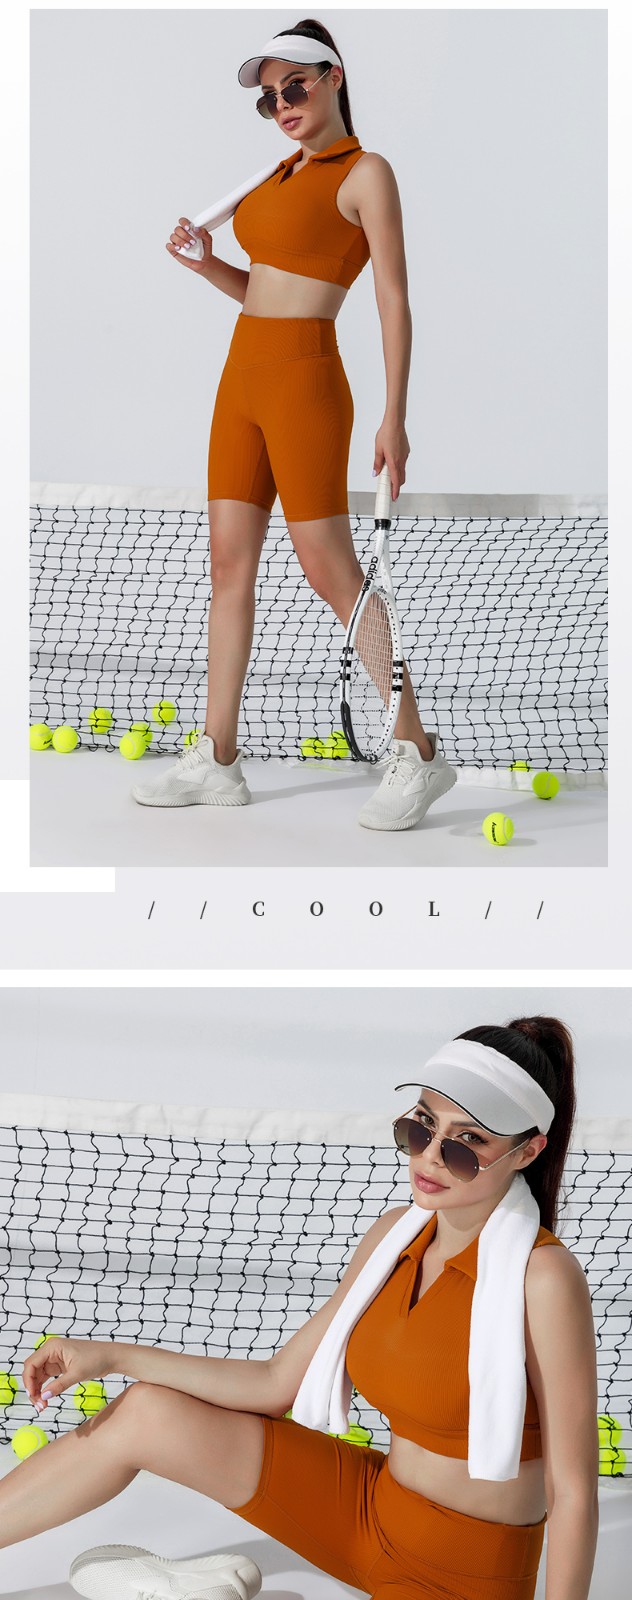 INGOR tennis ladies clothing type at the gym-4